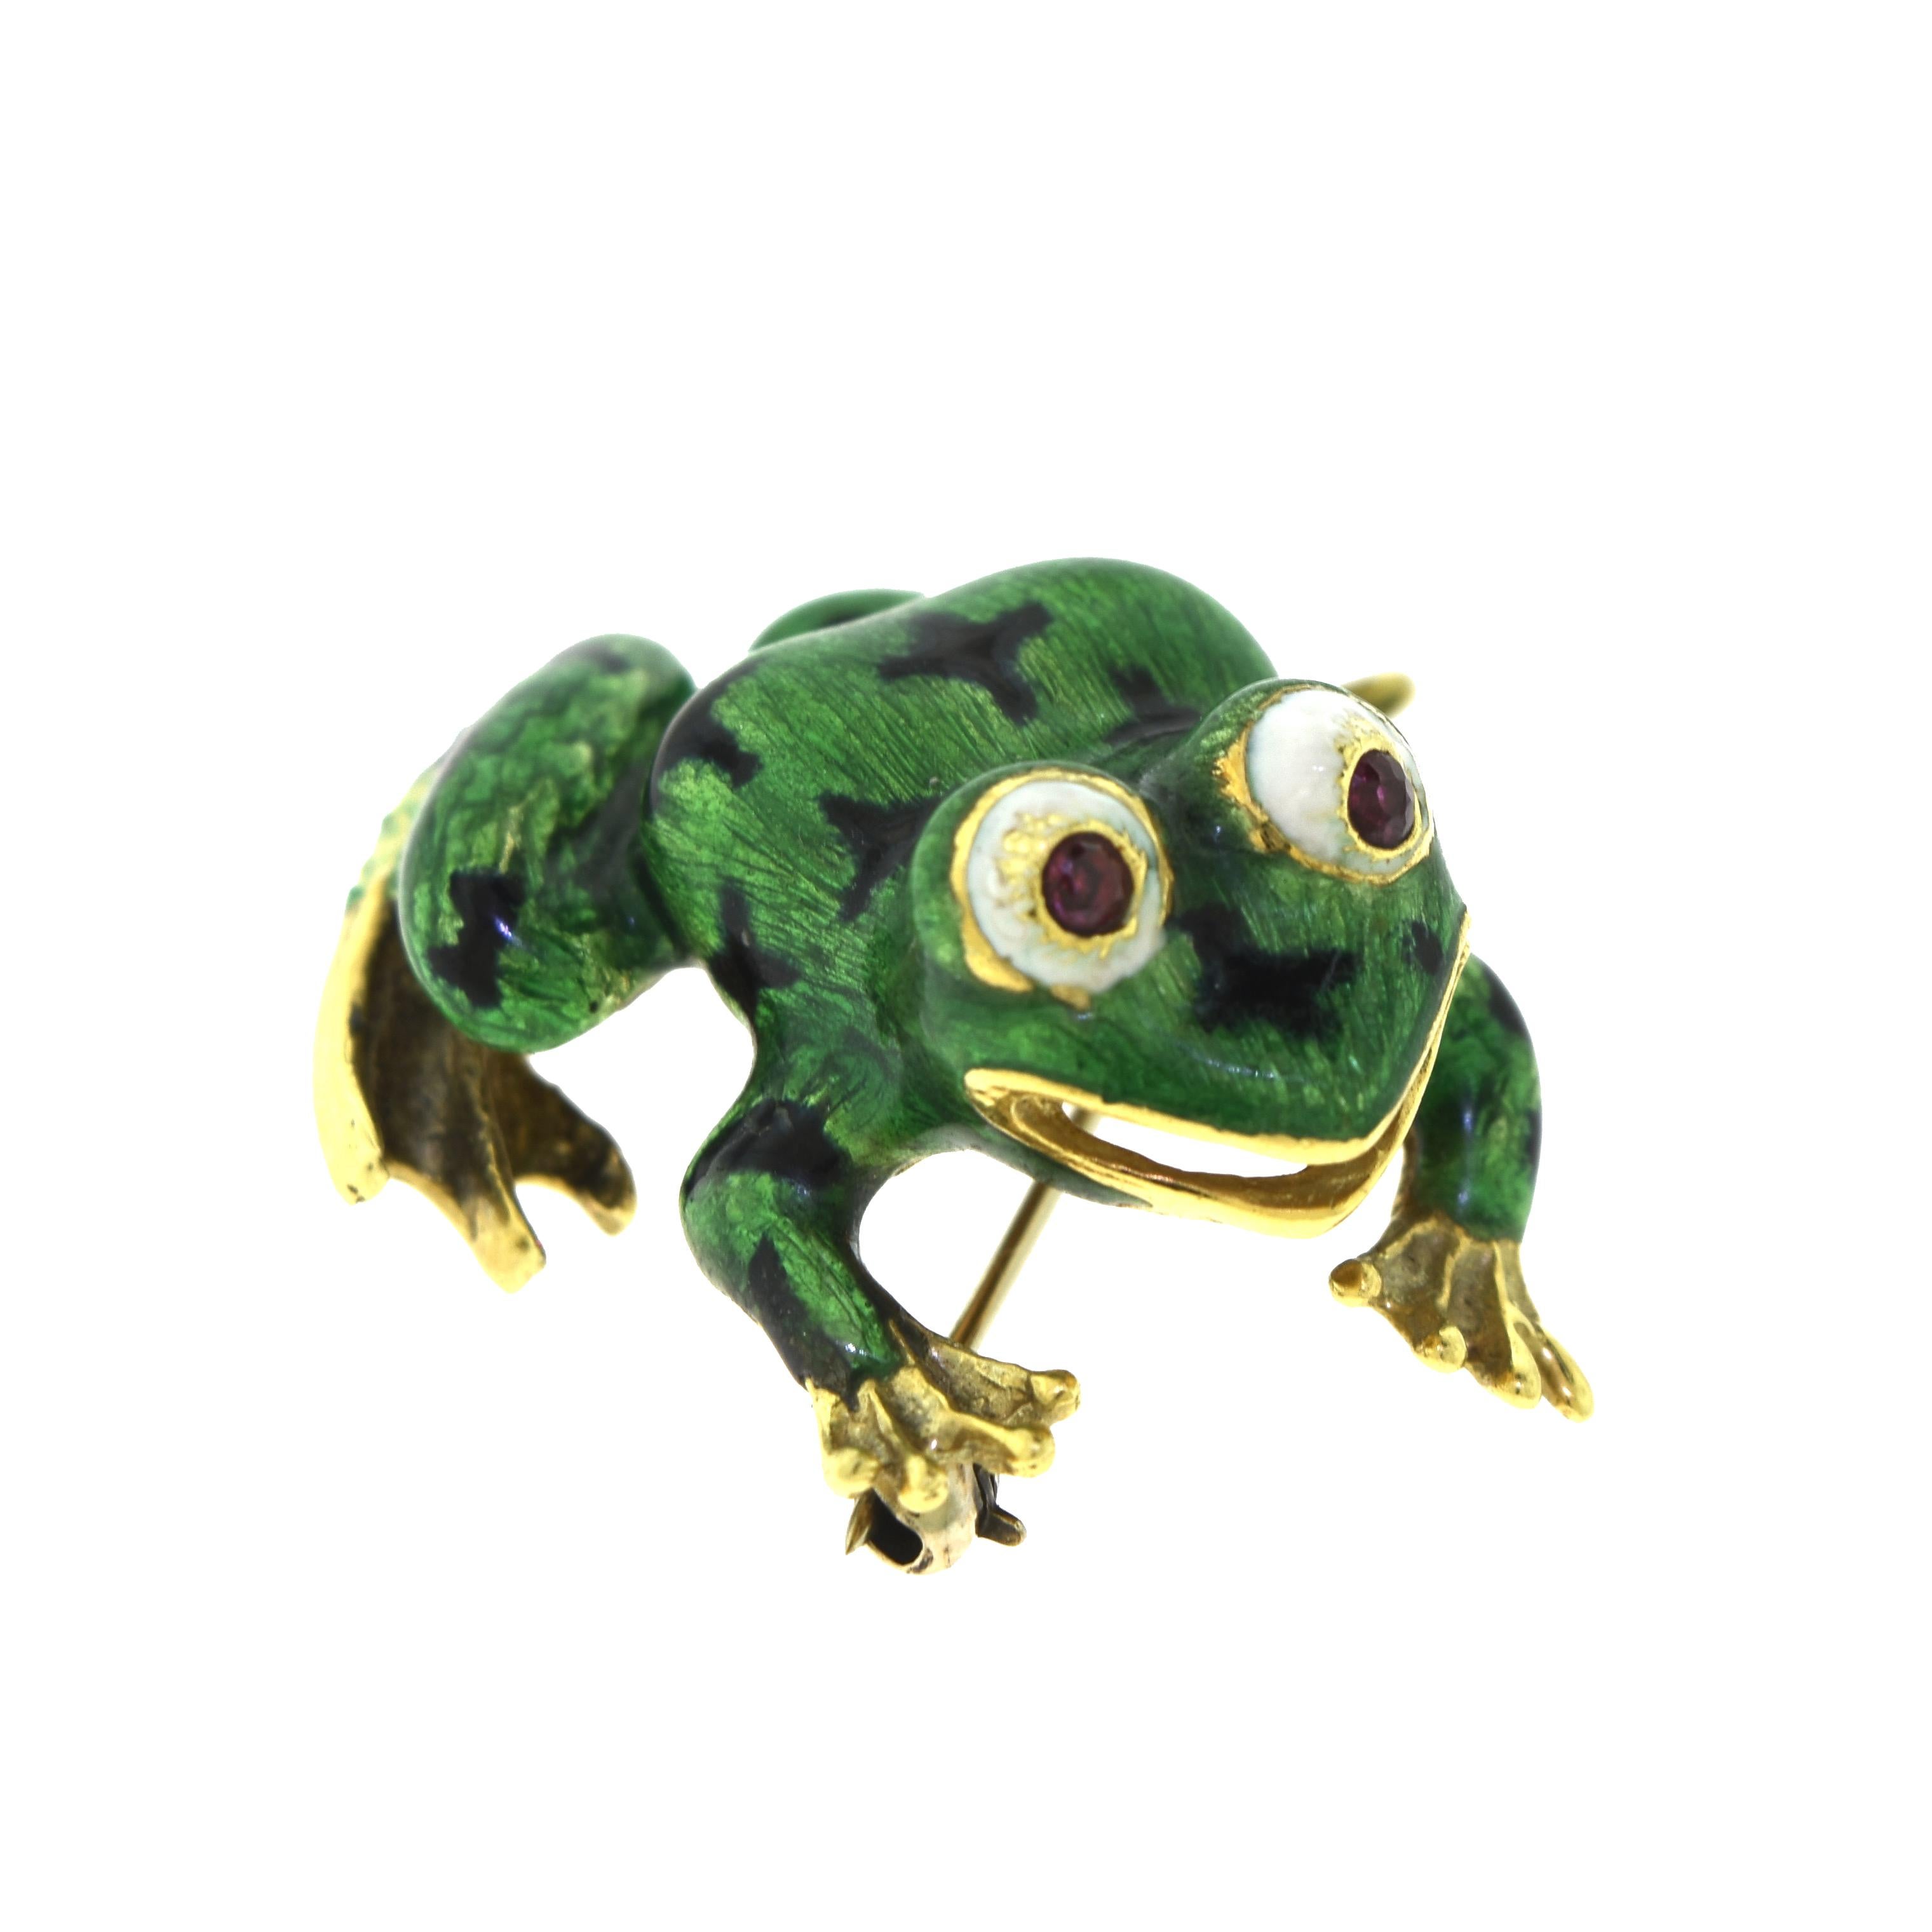 green frog estate sales photos